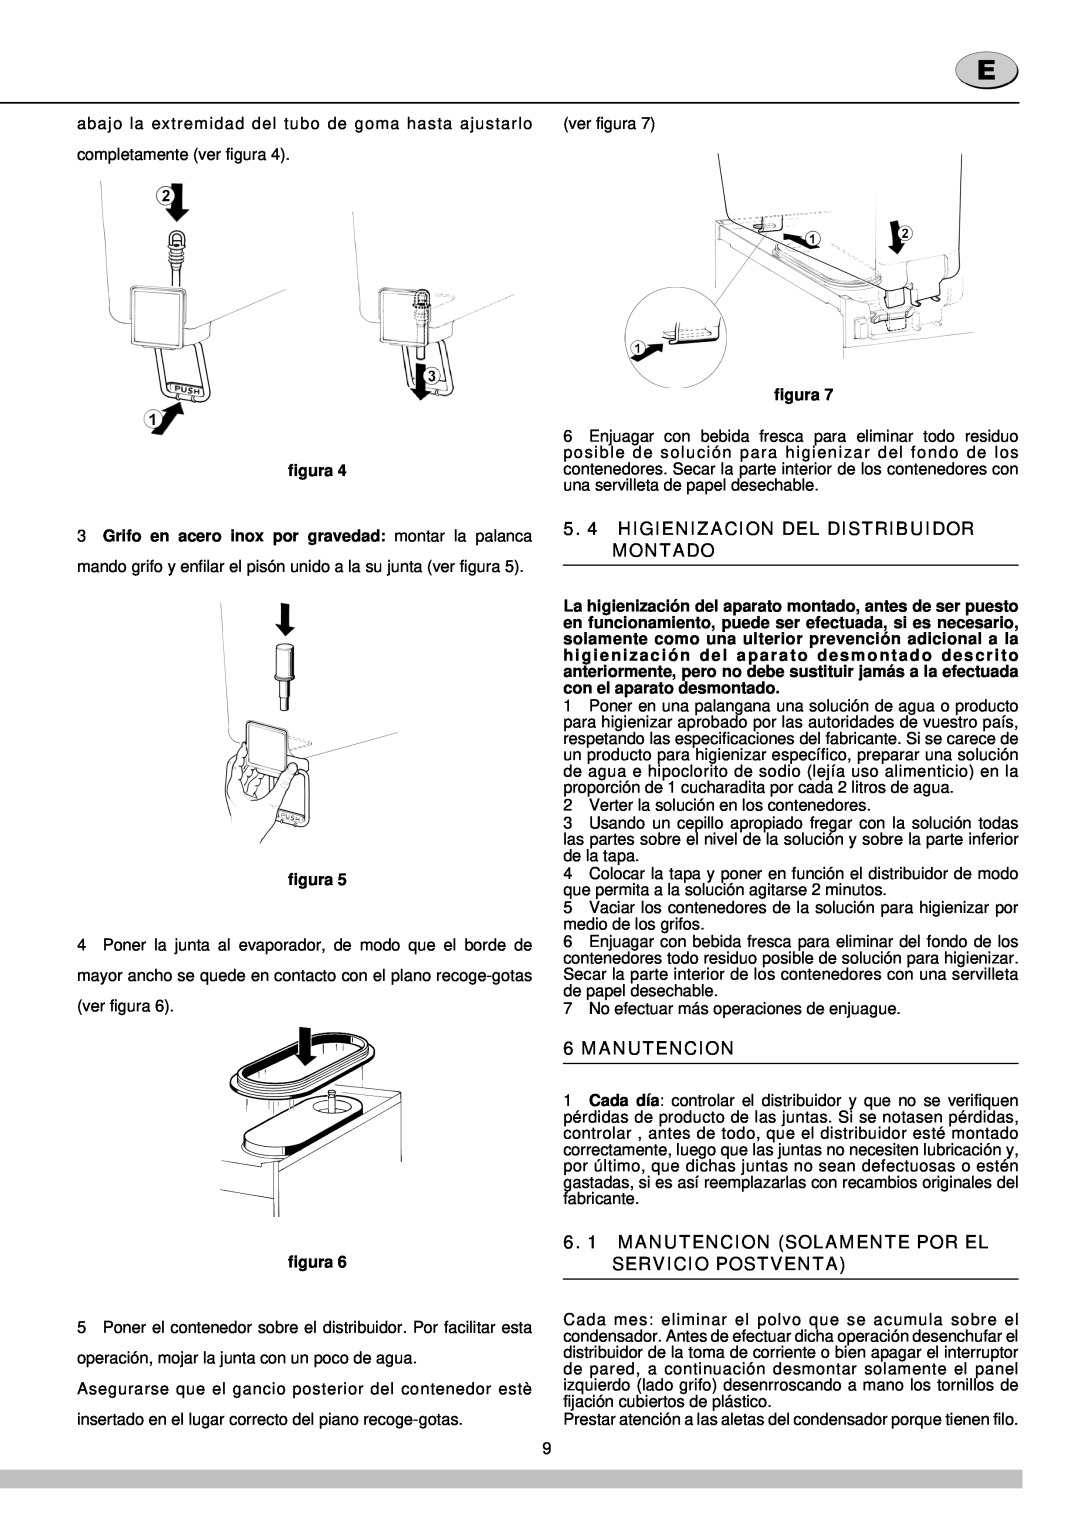 Cecilware 12-20 UL manual Higienizacion Del Distribuidor Montado, Manutencion, figura 